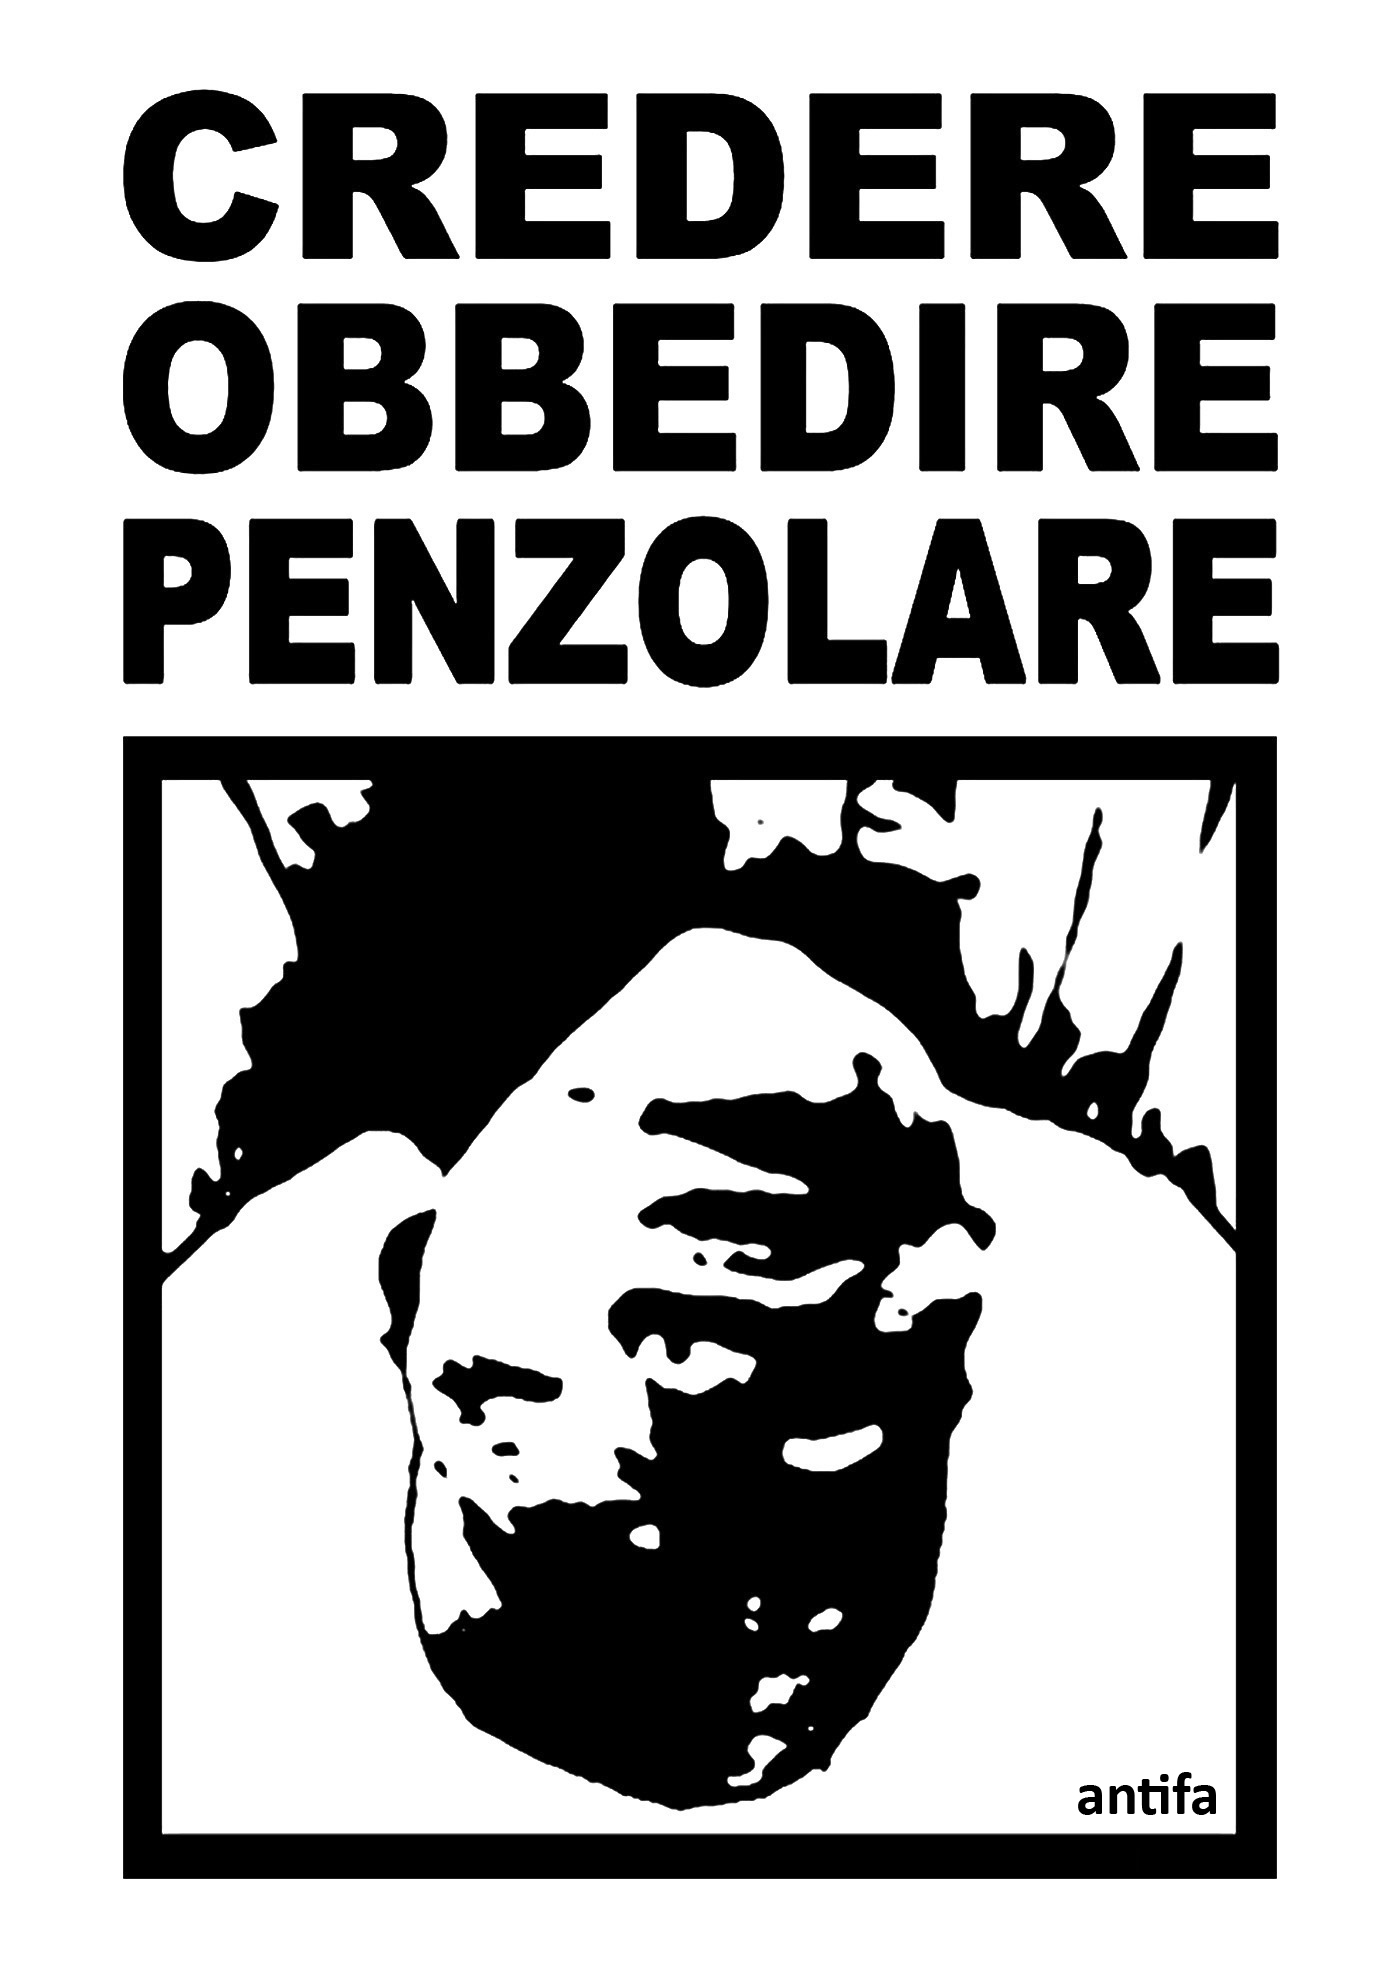 credere-obbedire -penzolare-3-graficanera-NO-COPYRIGHT